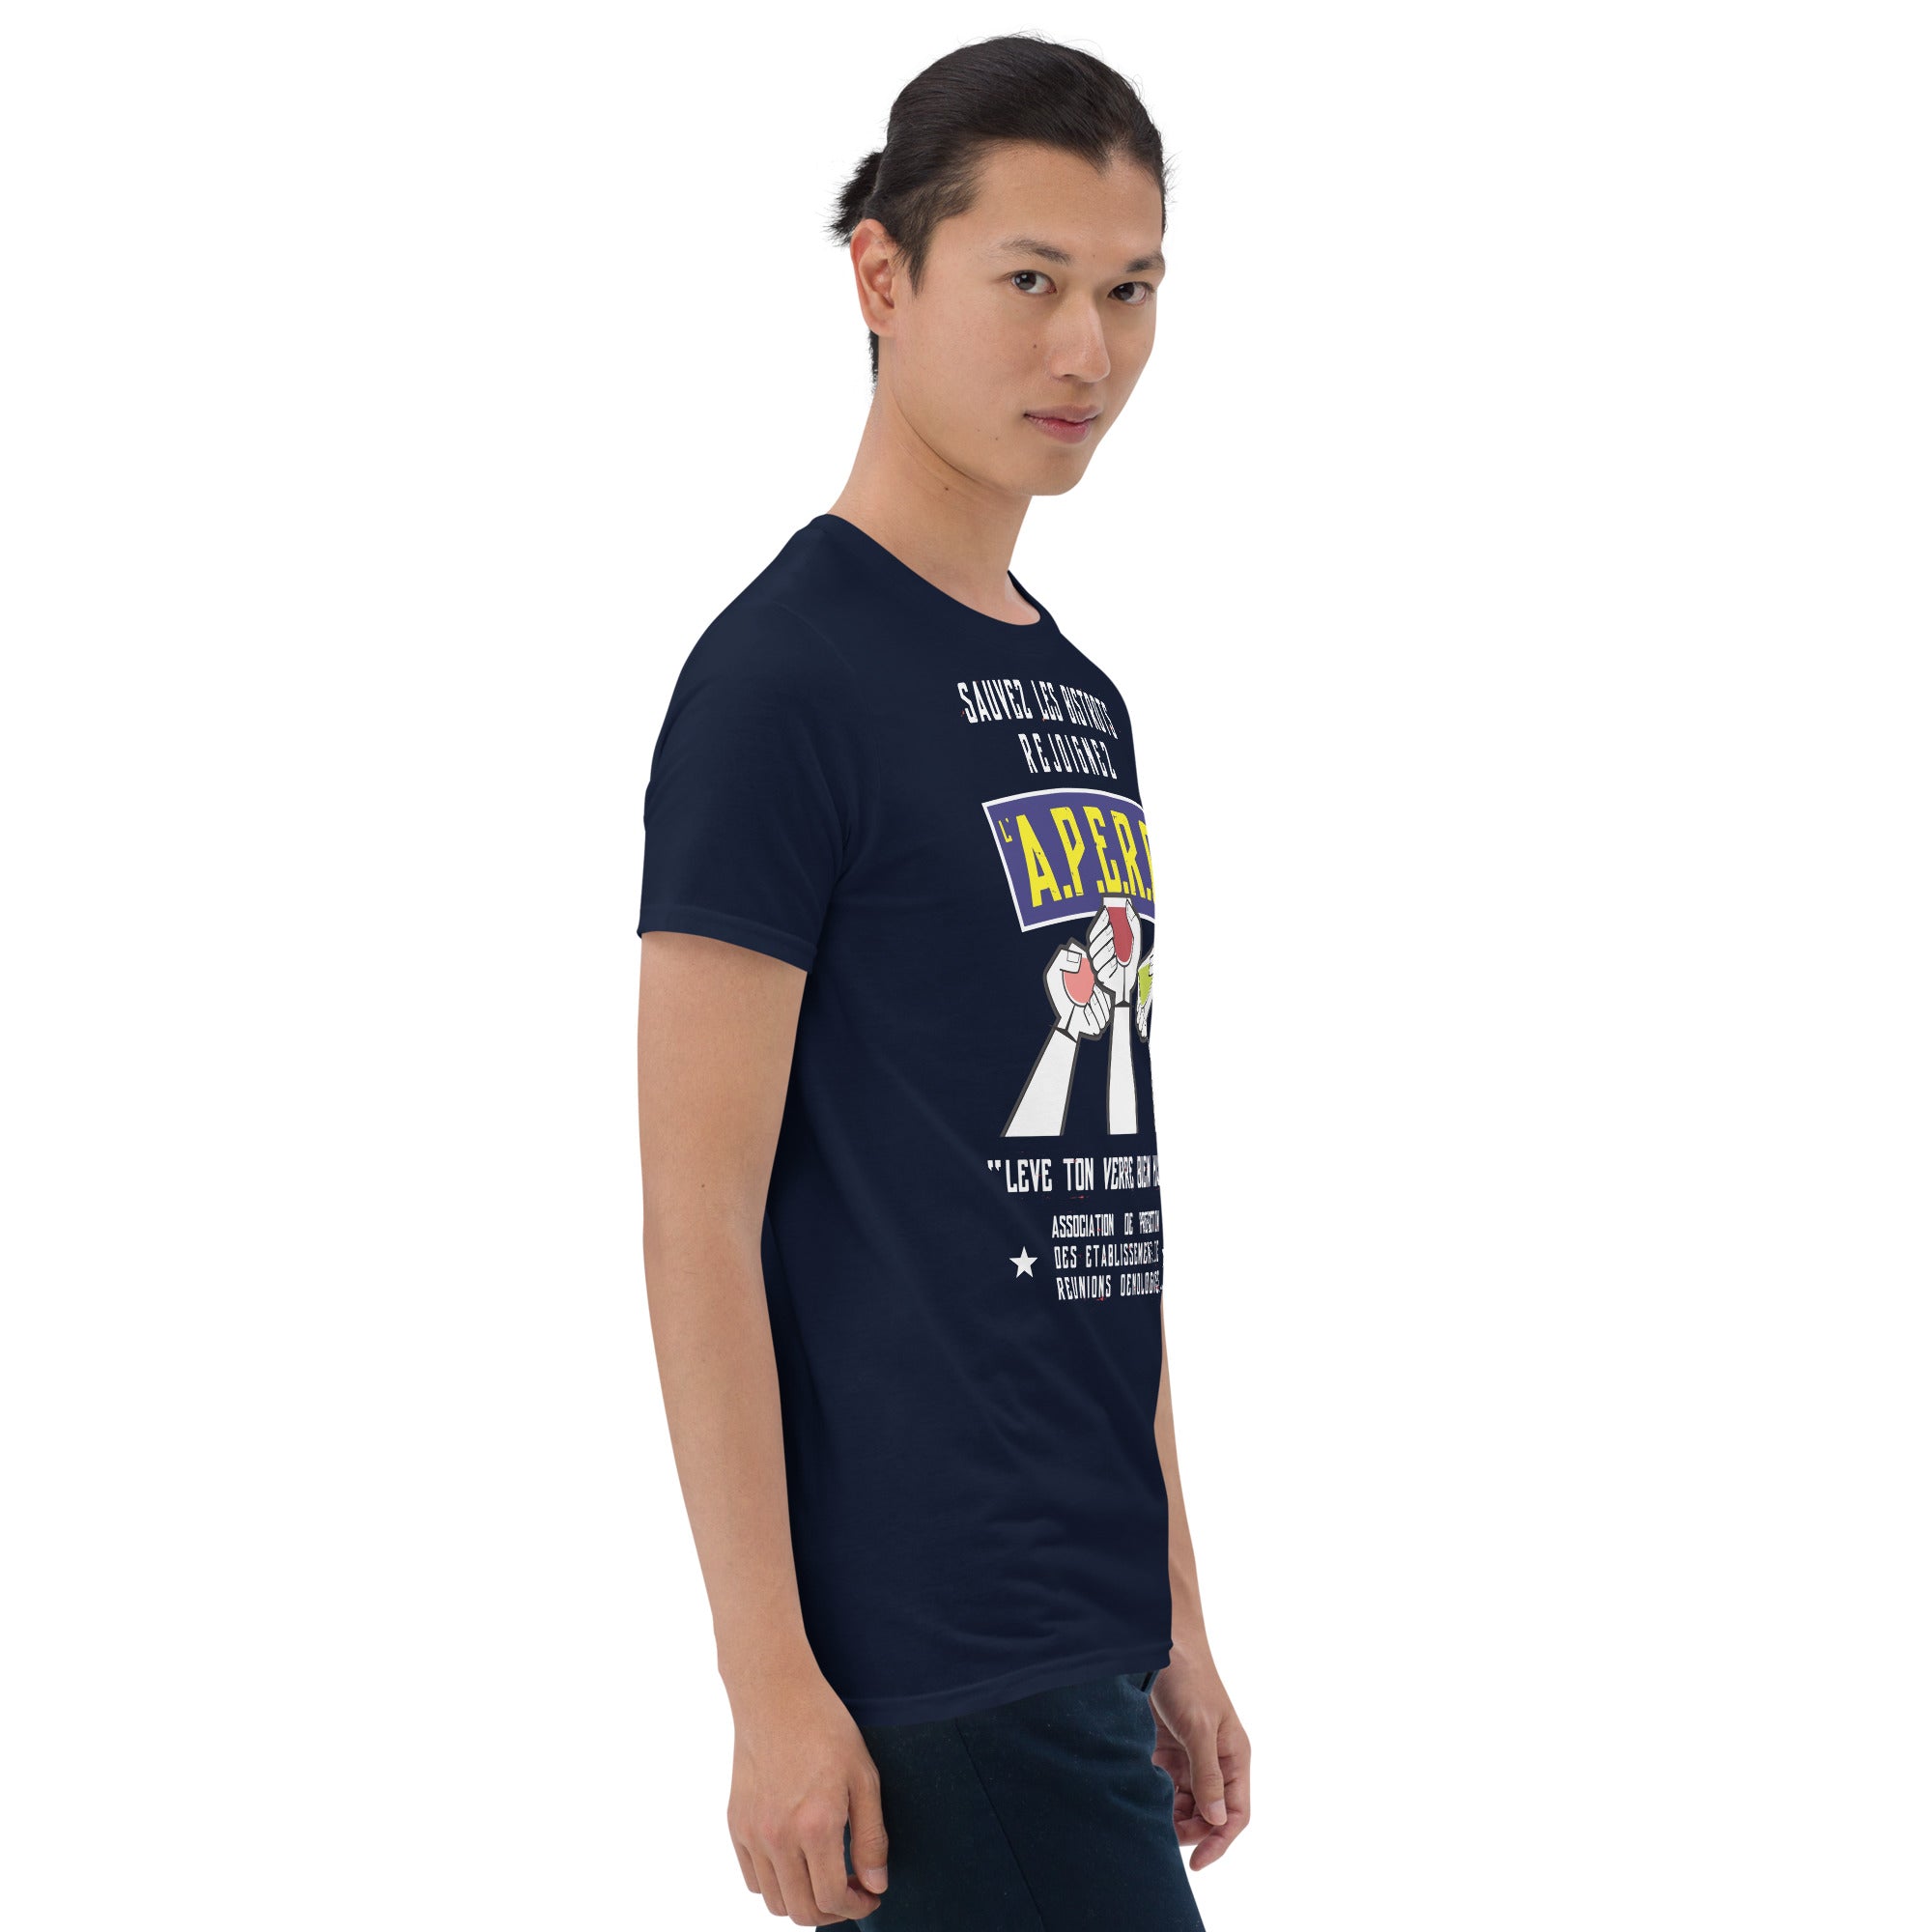 T-shirt softstyle en coton Sauvez les Bistrots, rejoignez l'Apéro sur couleurs foncées